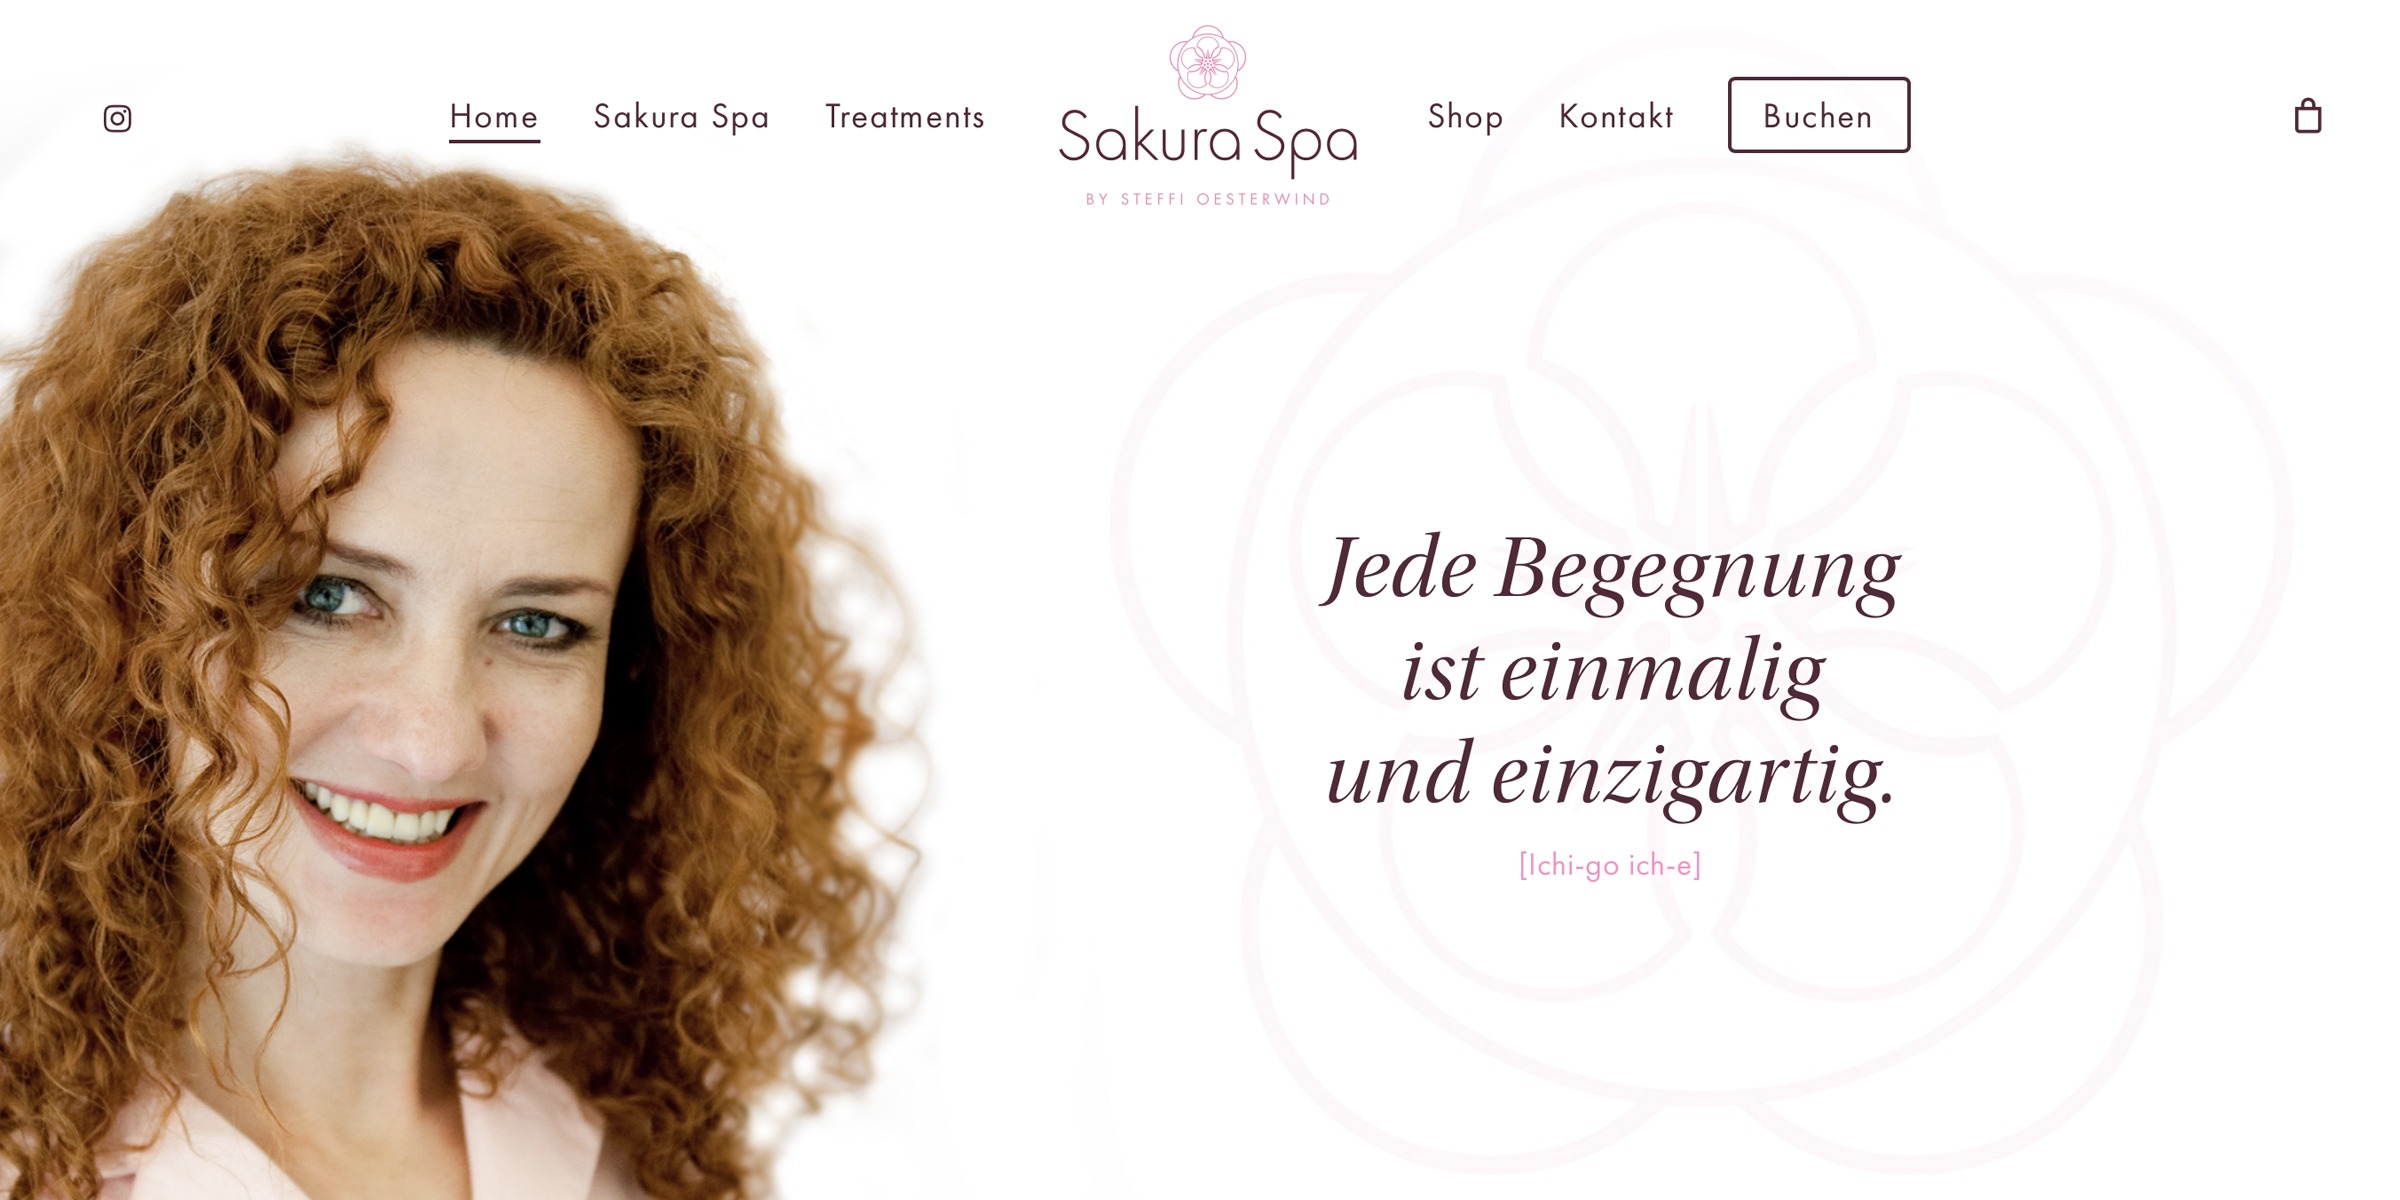 Startseite der Website Sakura Spa Hamburg